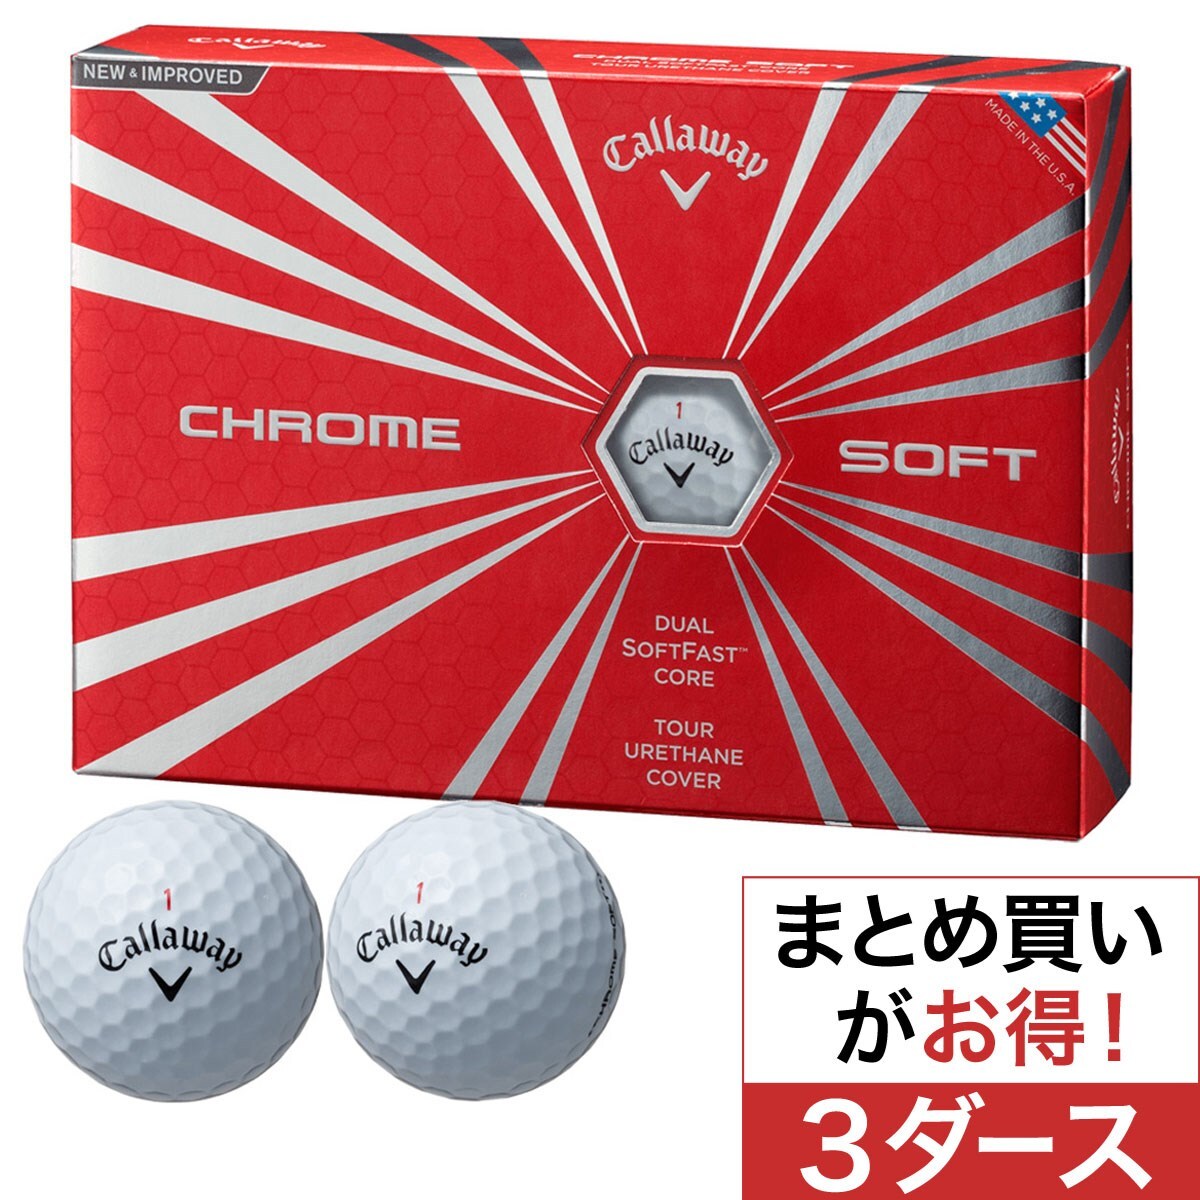 ☆【新品】キャロウェイ CHROME SOFT ボール ホワイト 3ダースセット